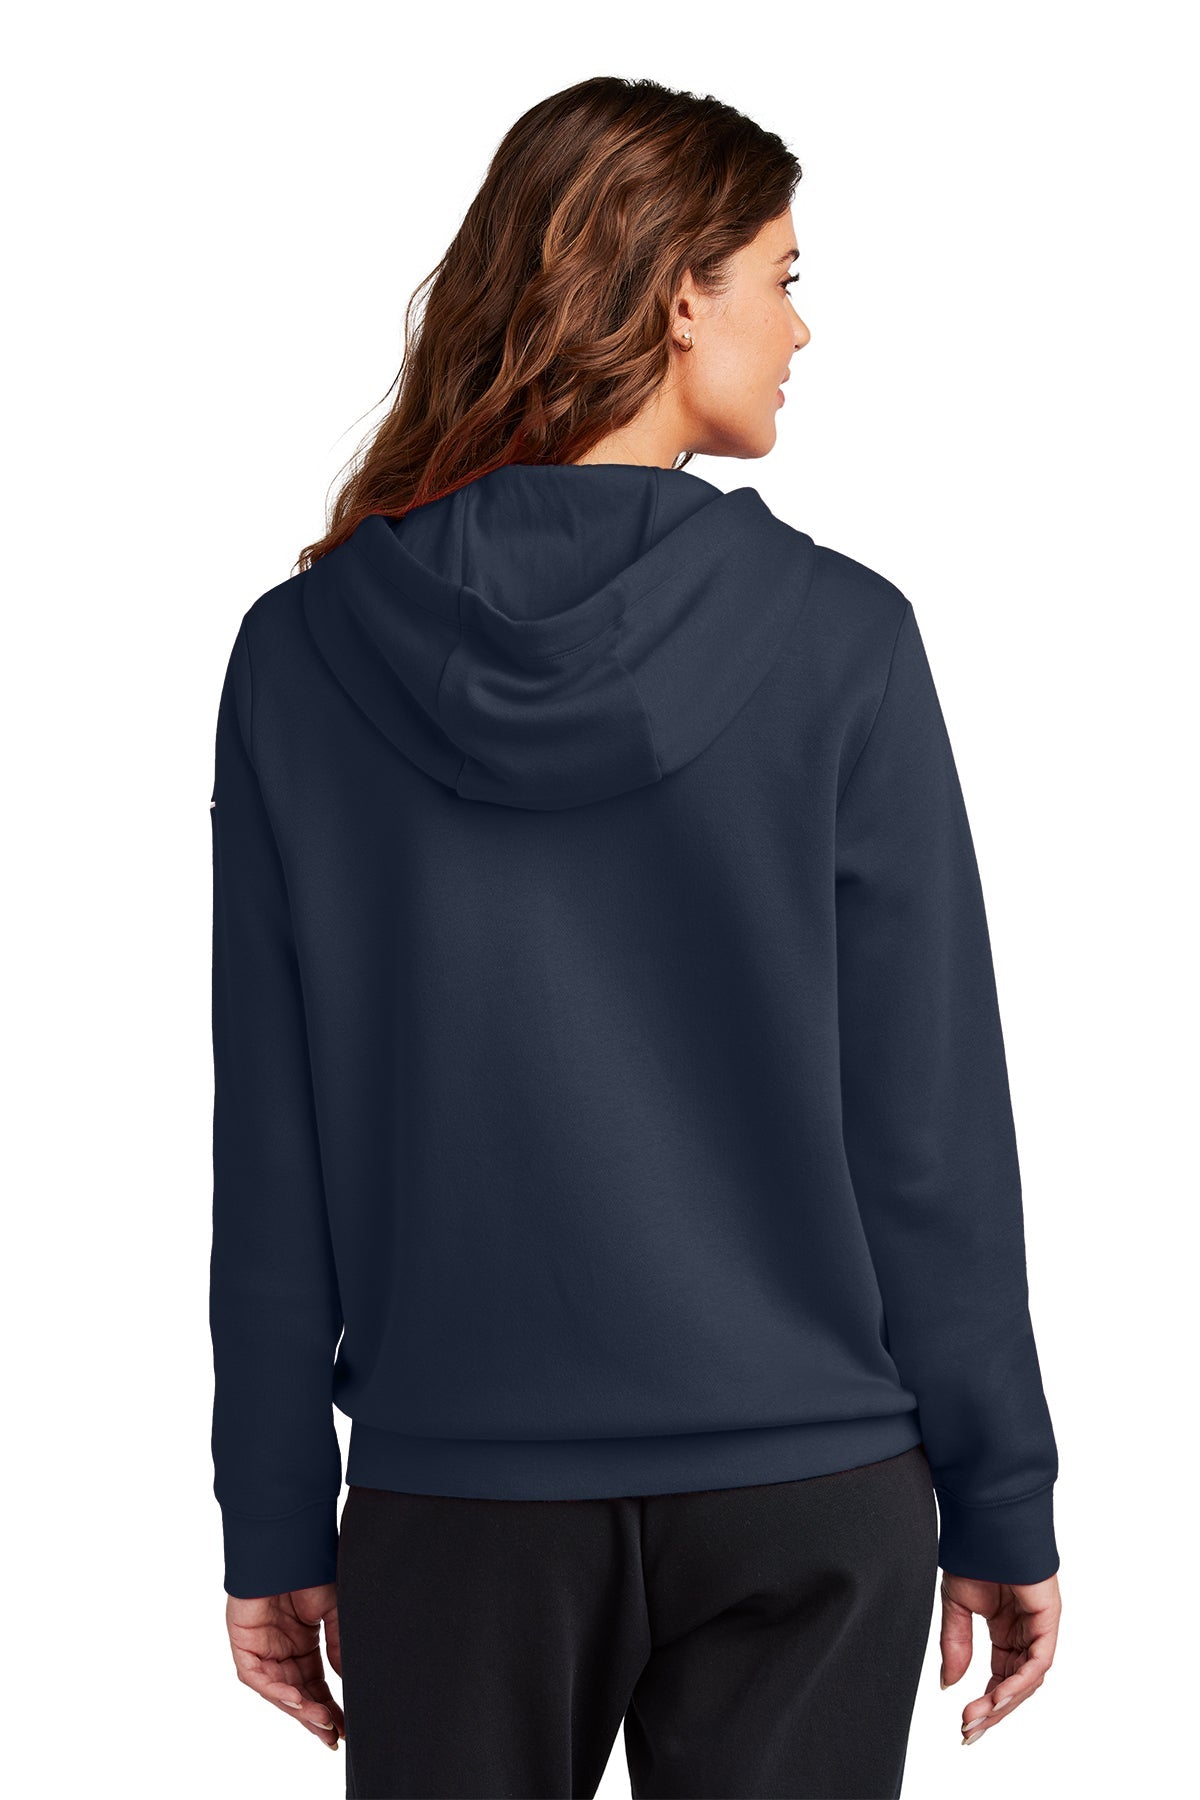 Nike Ladies Club Fleece Full-Zip Custom Hoodies, Midnight Navy